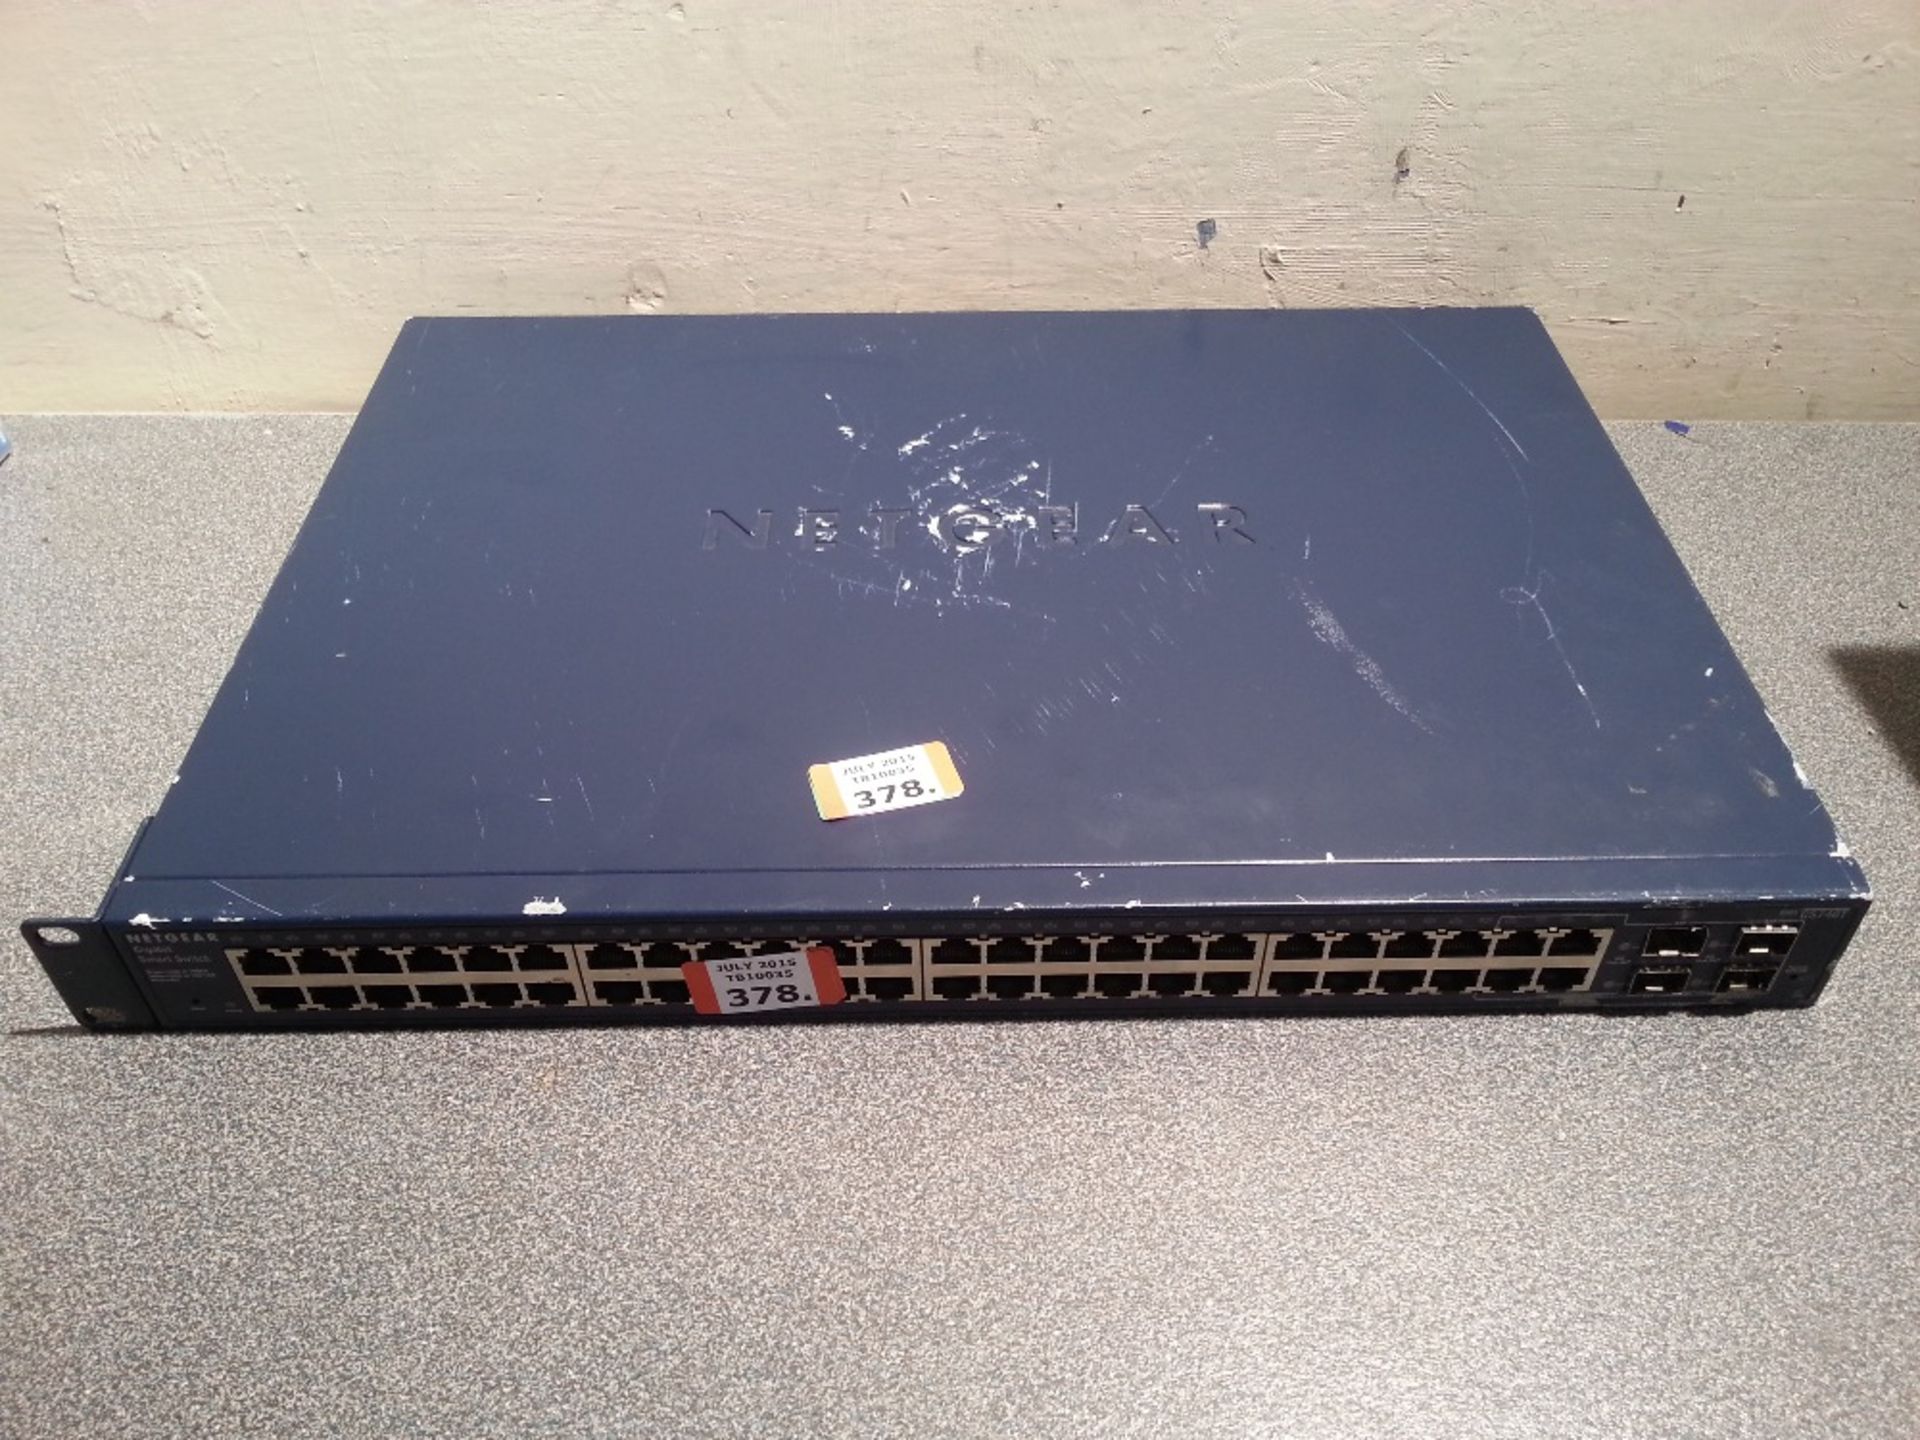 NETGEAR GS748T 48 Port 10/100/1000 Switch - 1U Rackmount - Missing Rack Ear - Powers on